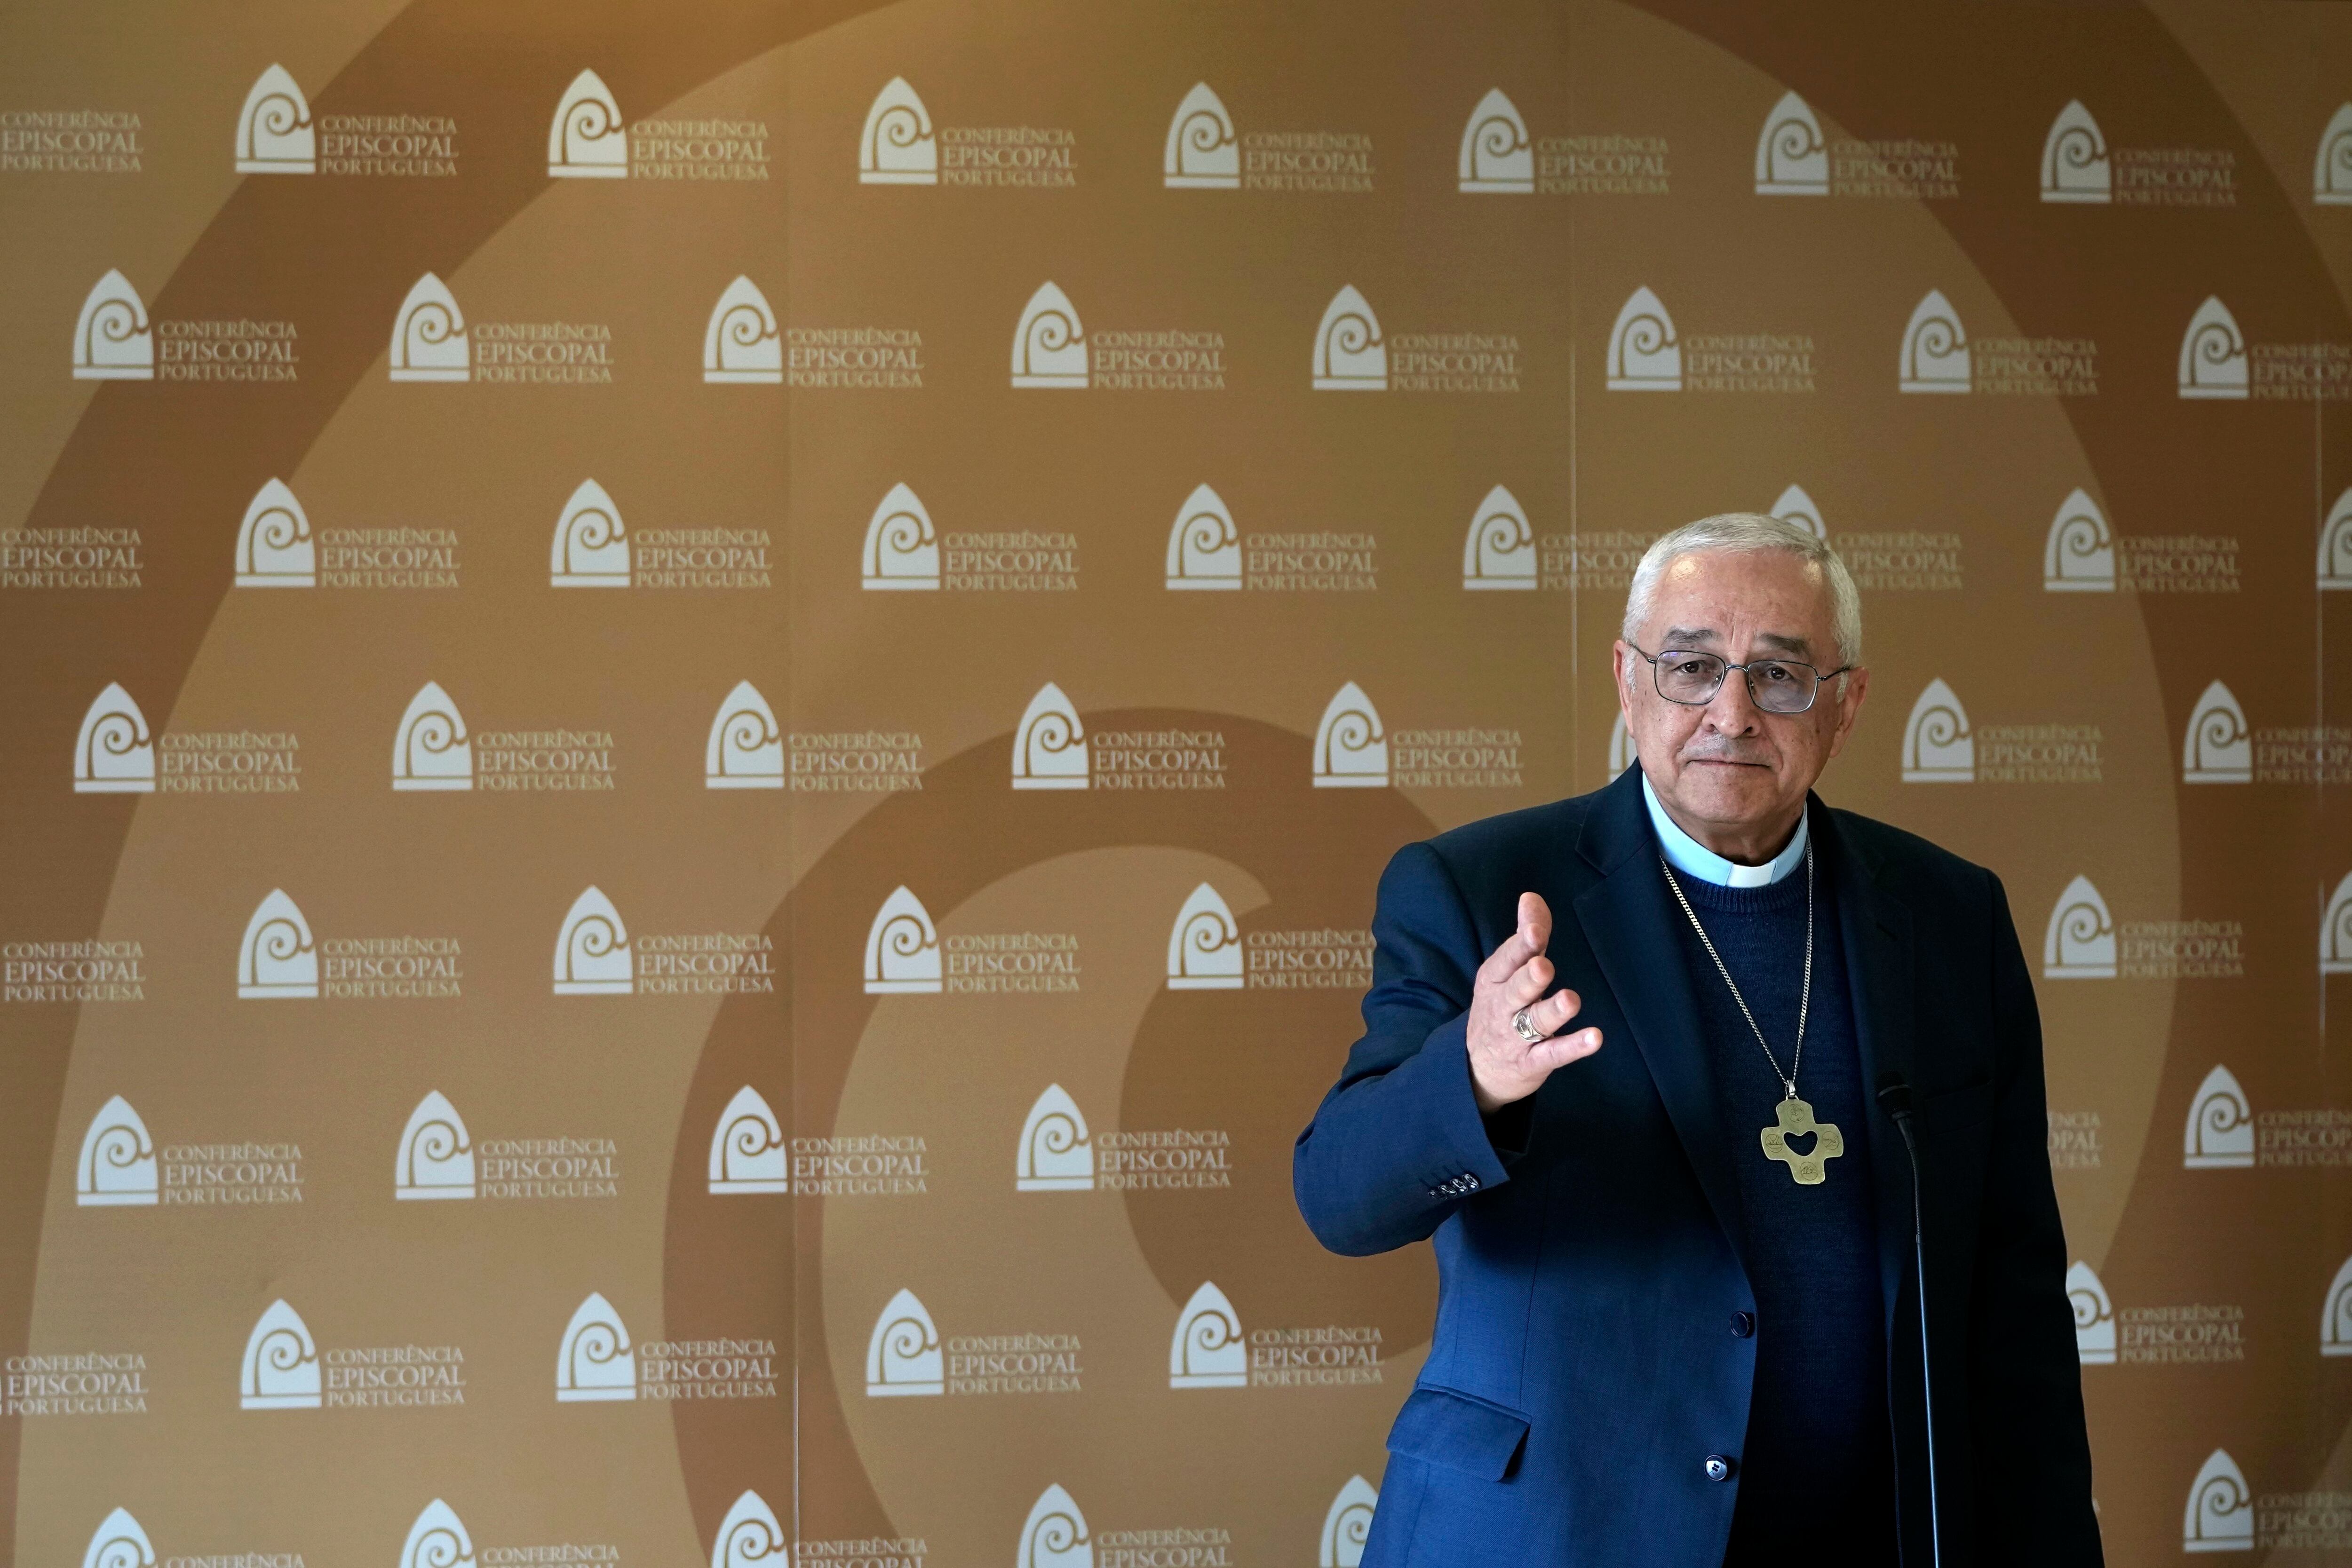 El presidente de la conferencia episcopal portuguesa, el obispo Jose Ornelas (AP Foto/Armando Franca, Archivo)